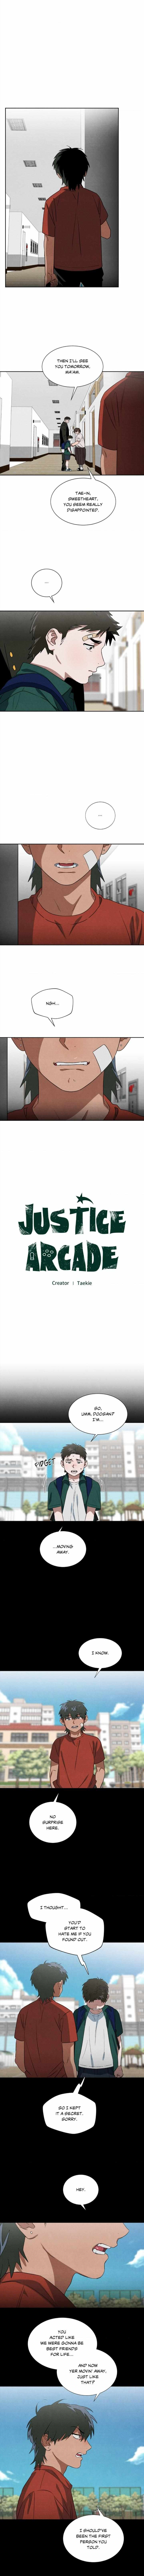 Arcade Justice - Page 2